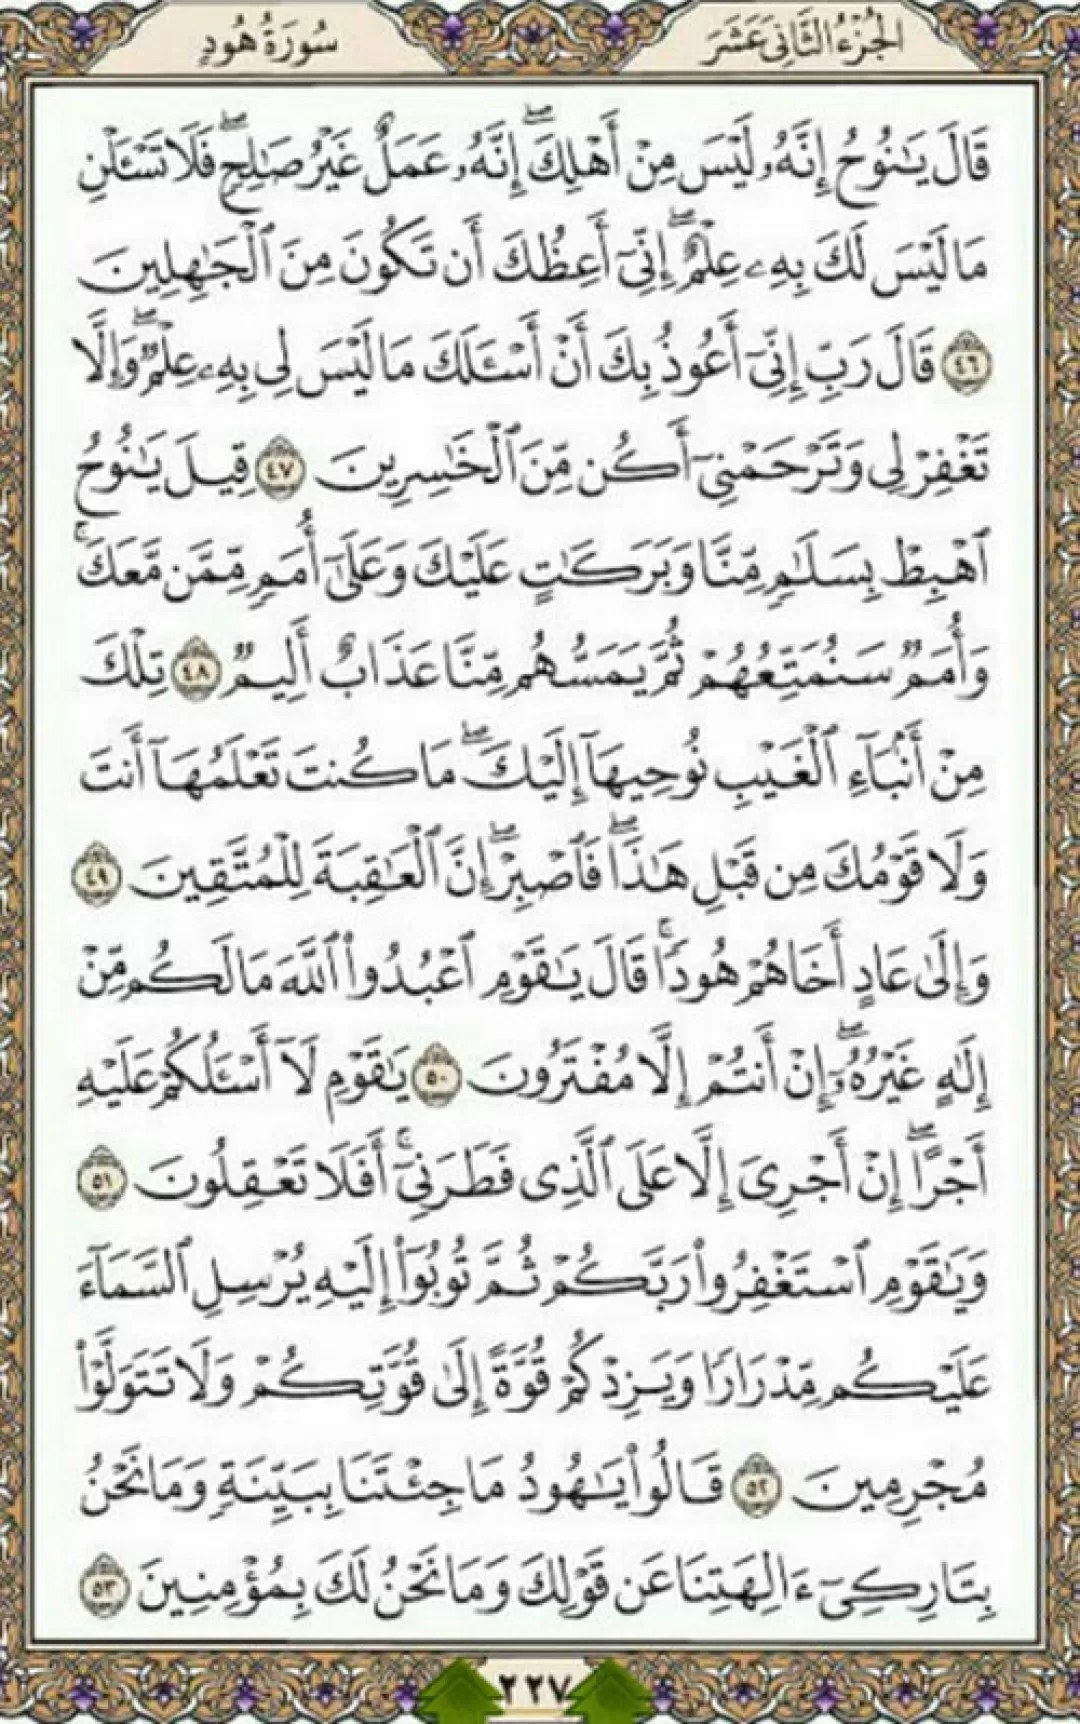 یک صفحه با کلام با طراوت قرآن